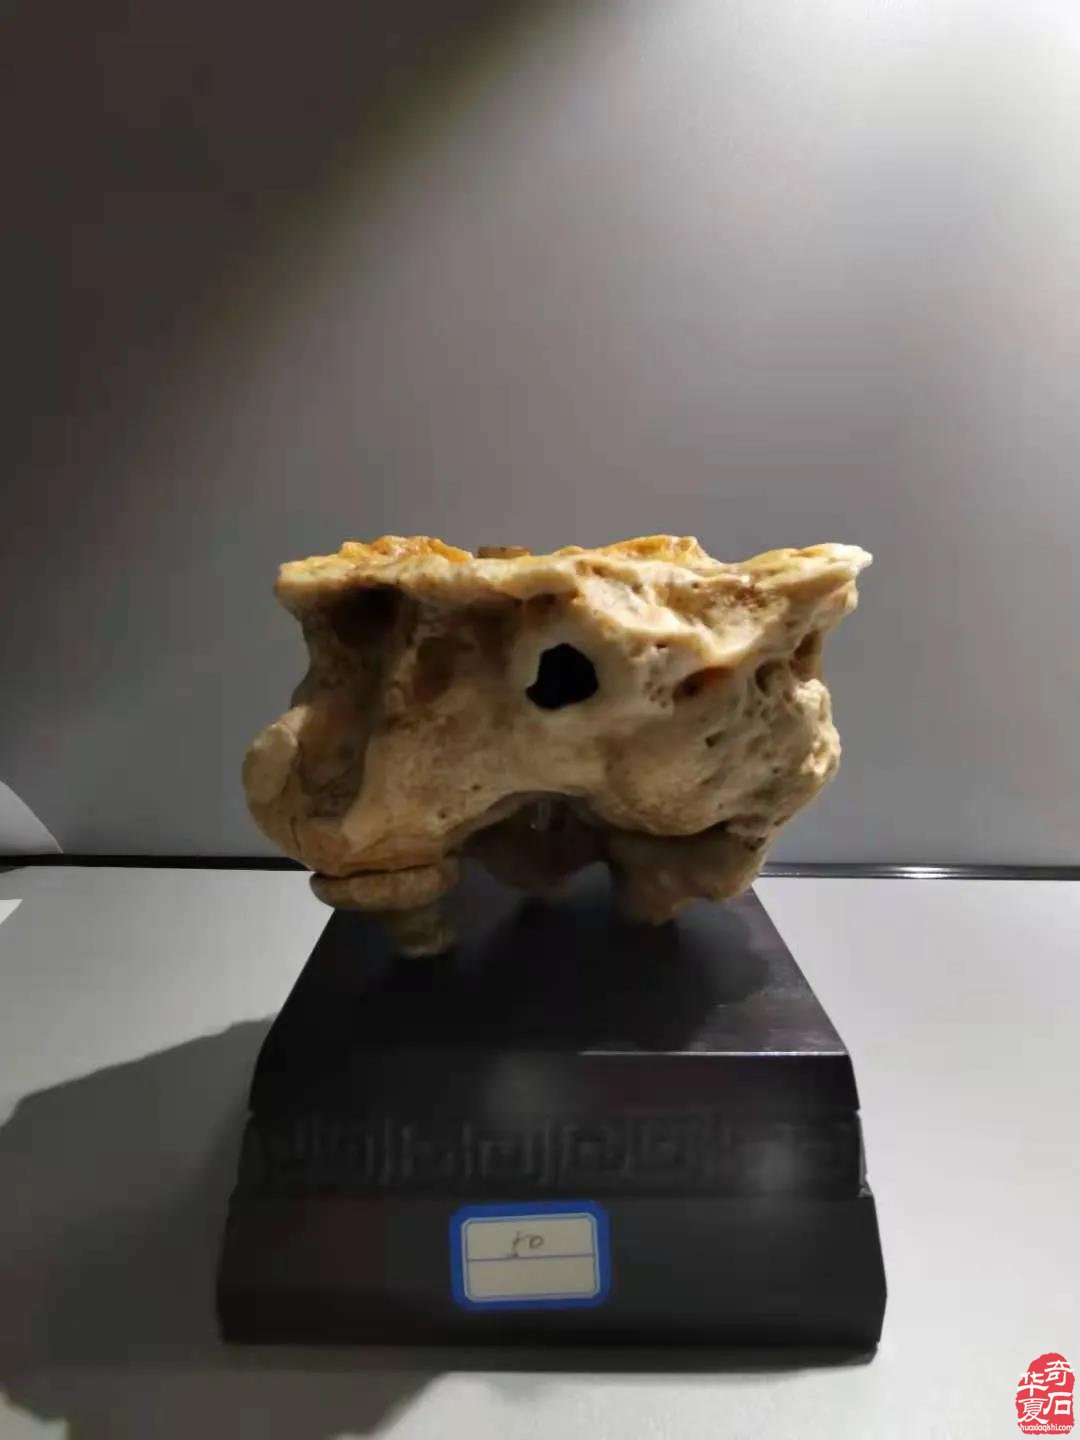 中国·银川第二届赏石非遗文化旅游博览会隆重开幕